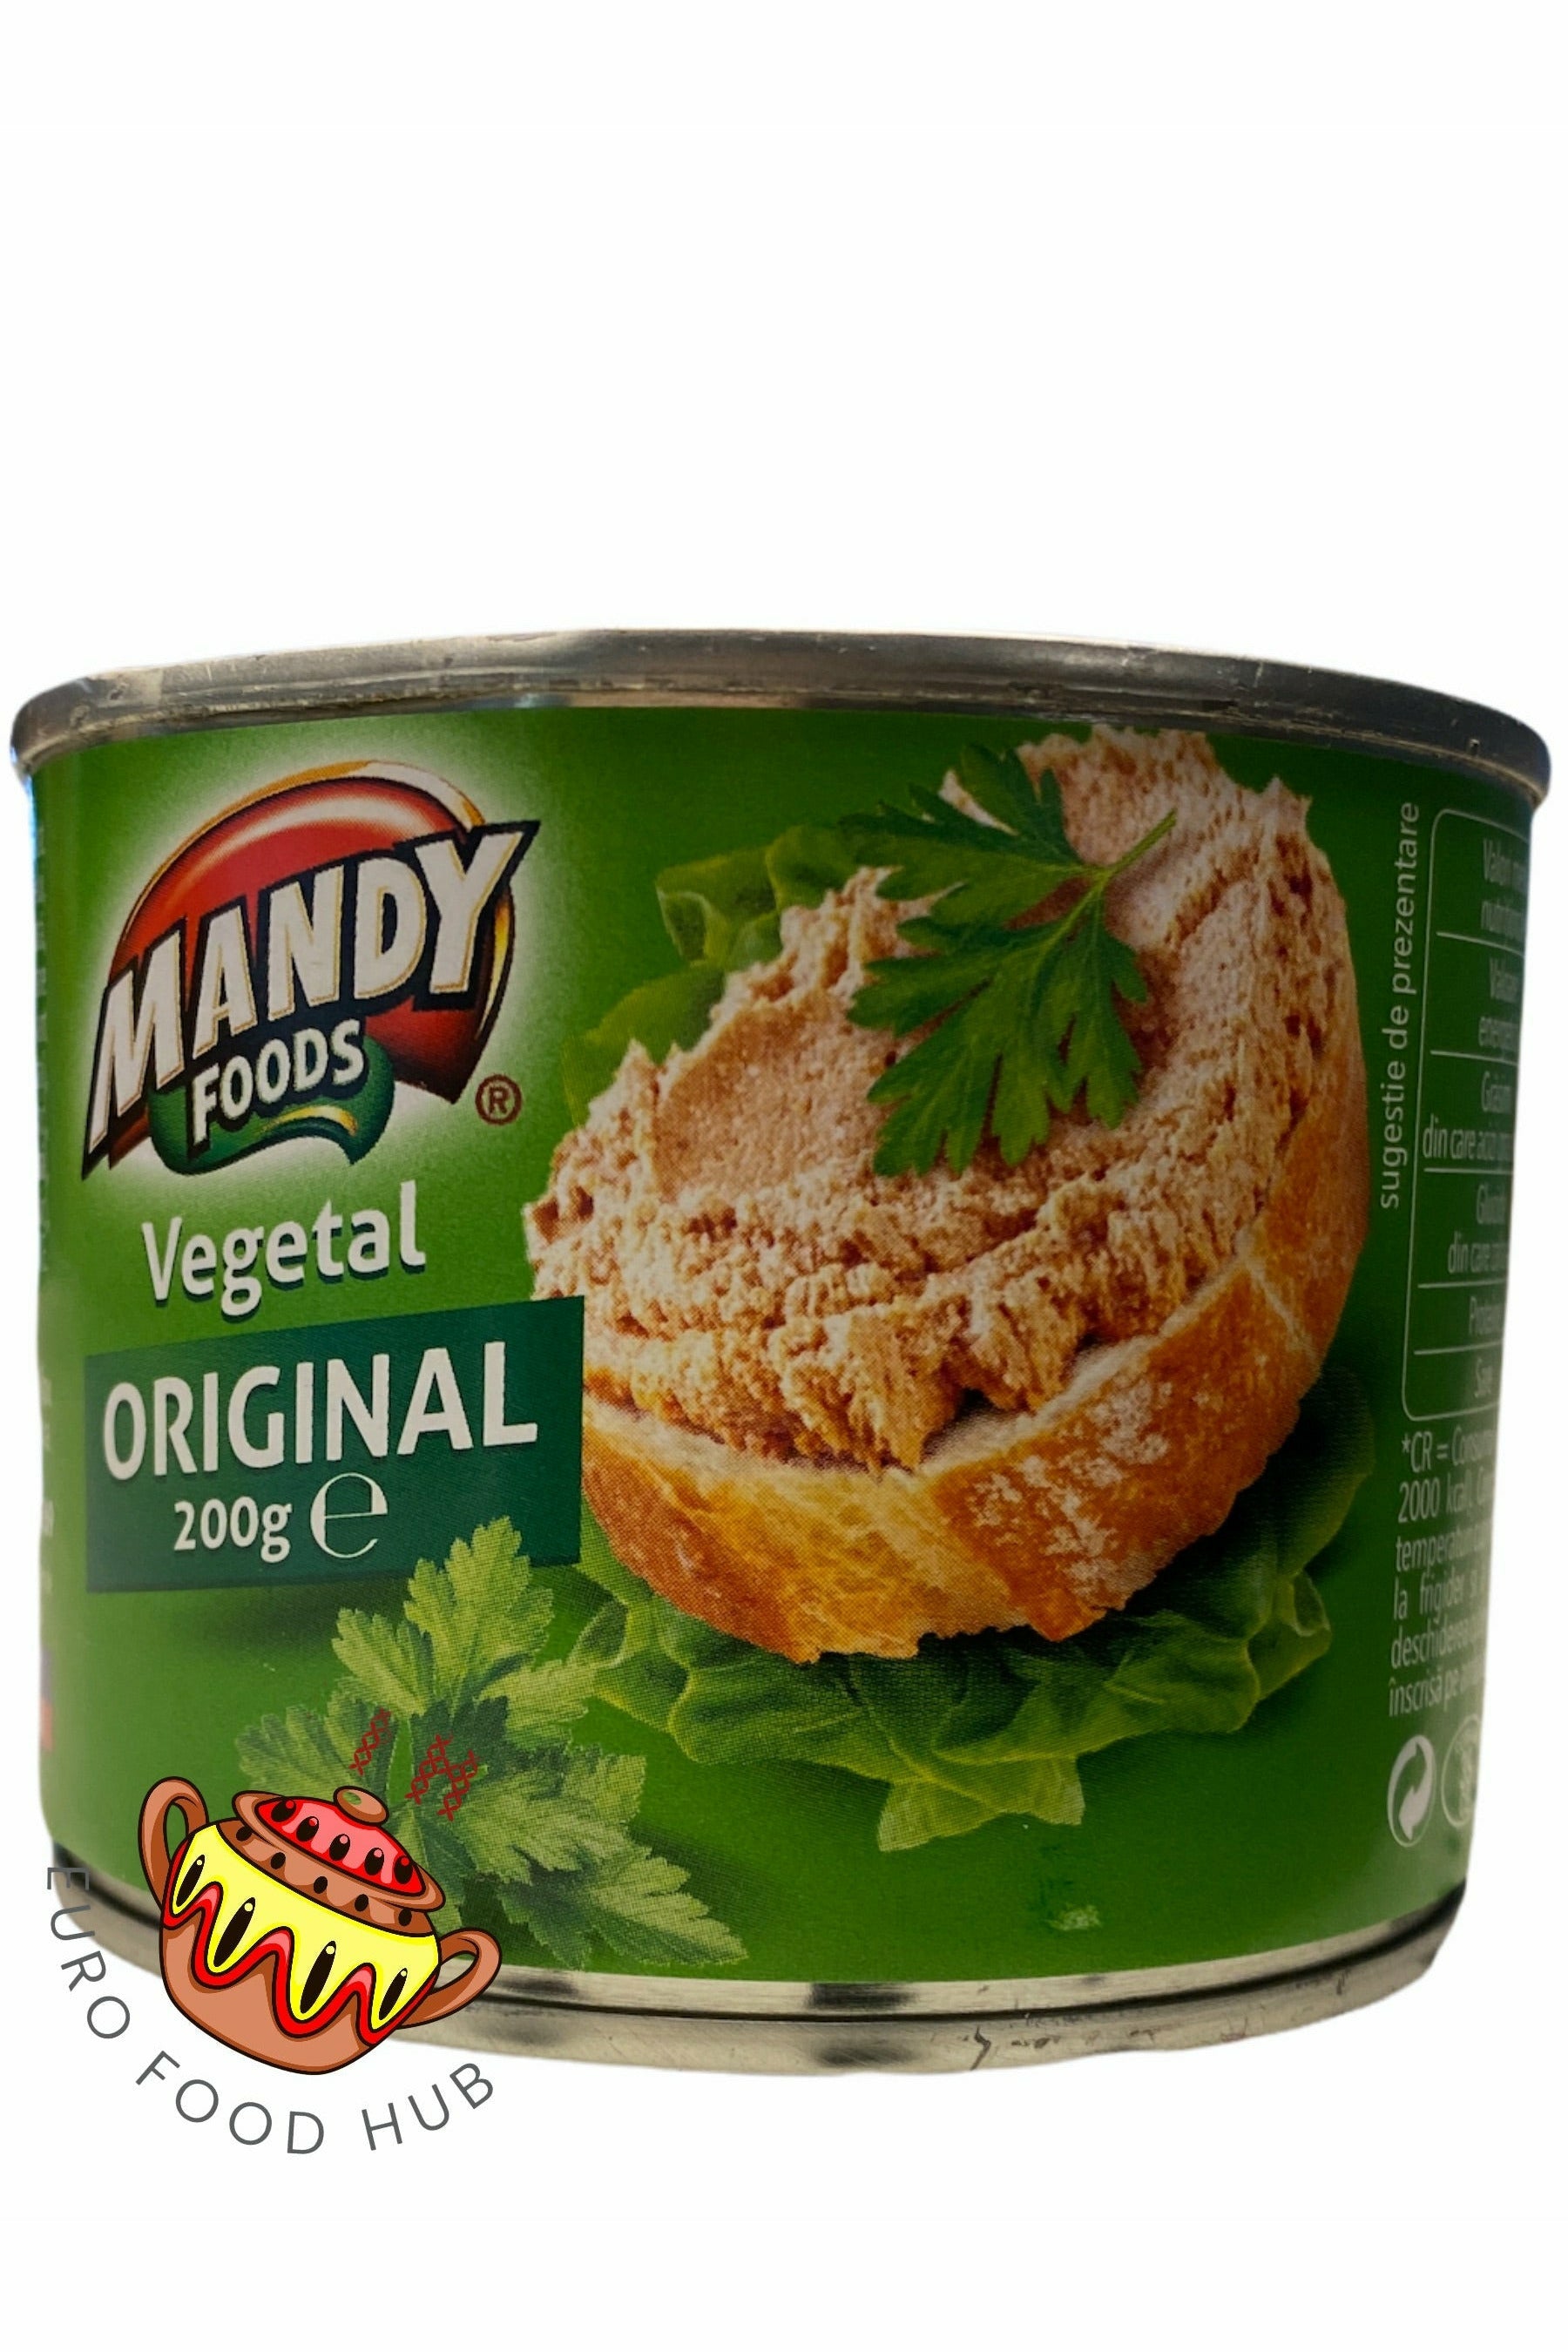 Vegetarian Pate - ORIGINAL - Mandy Foods